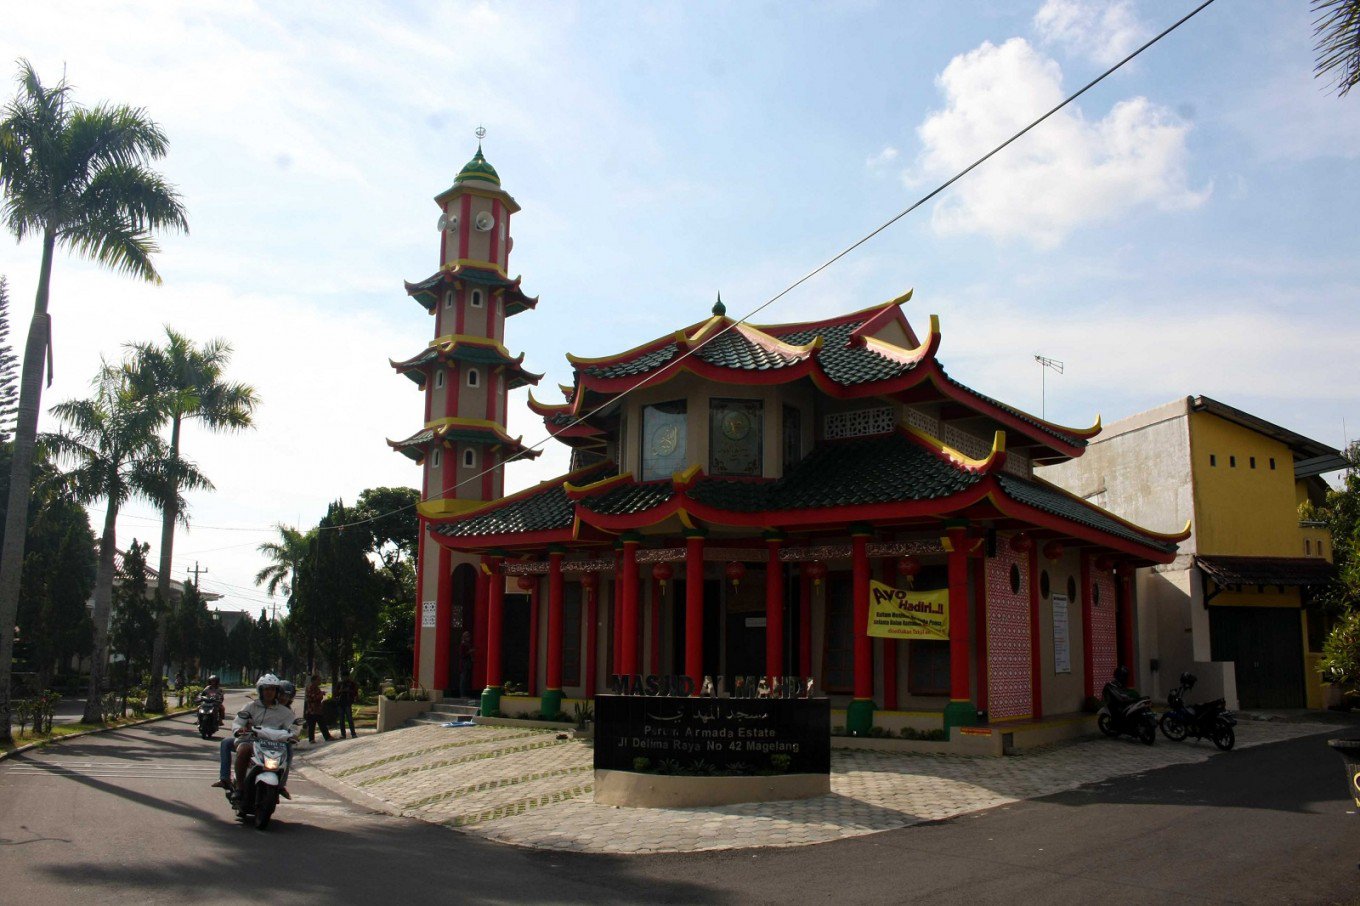 مسجد منحصر به فردی در اندونزی که ساختمانی شبیه معابد چینی دارد  